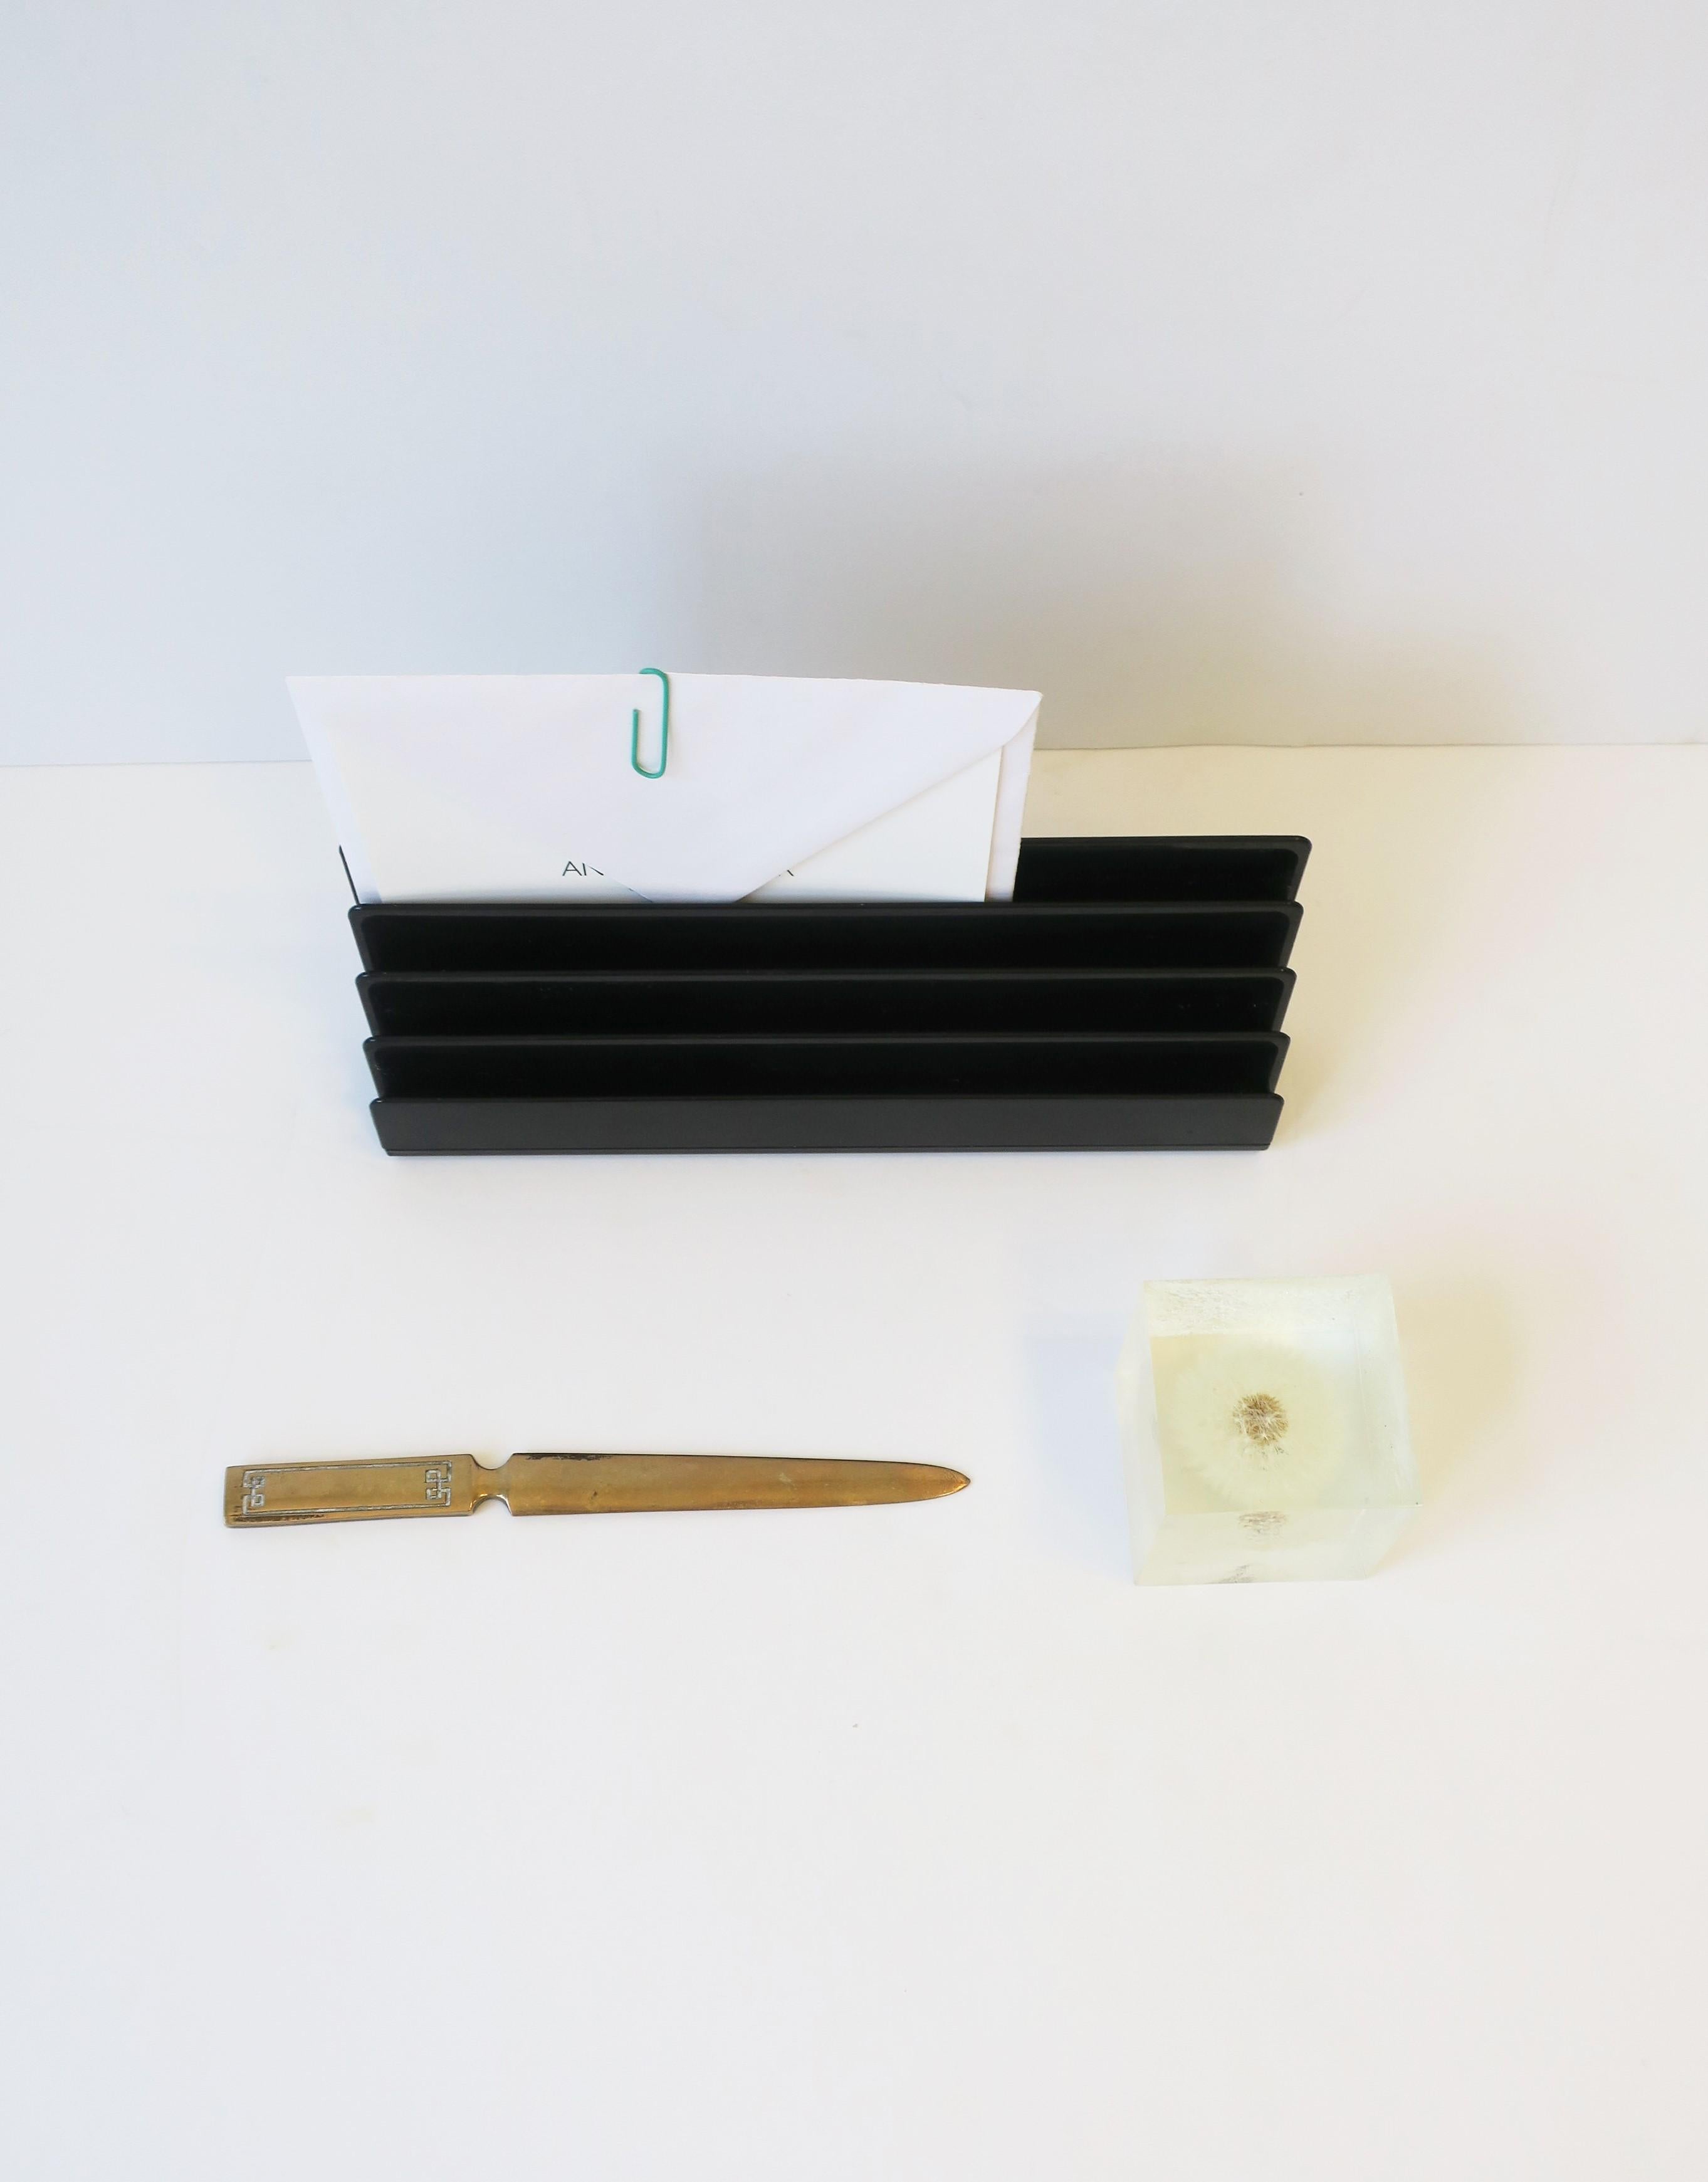 Plastic Italian Postmodern Letter Holder or Desk Organizer by Designer Rino Pirovano